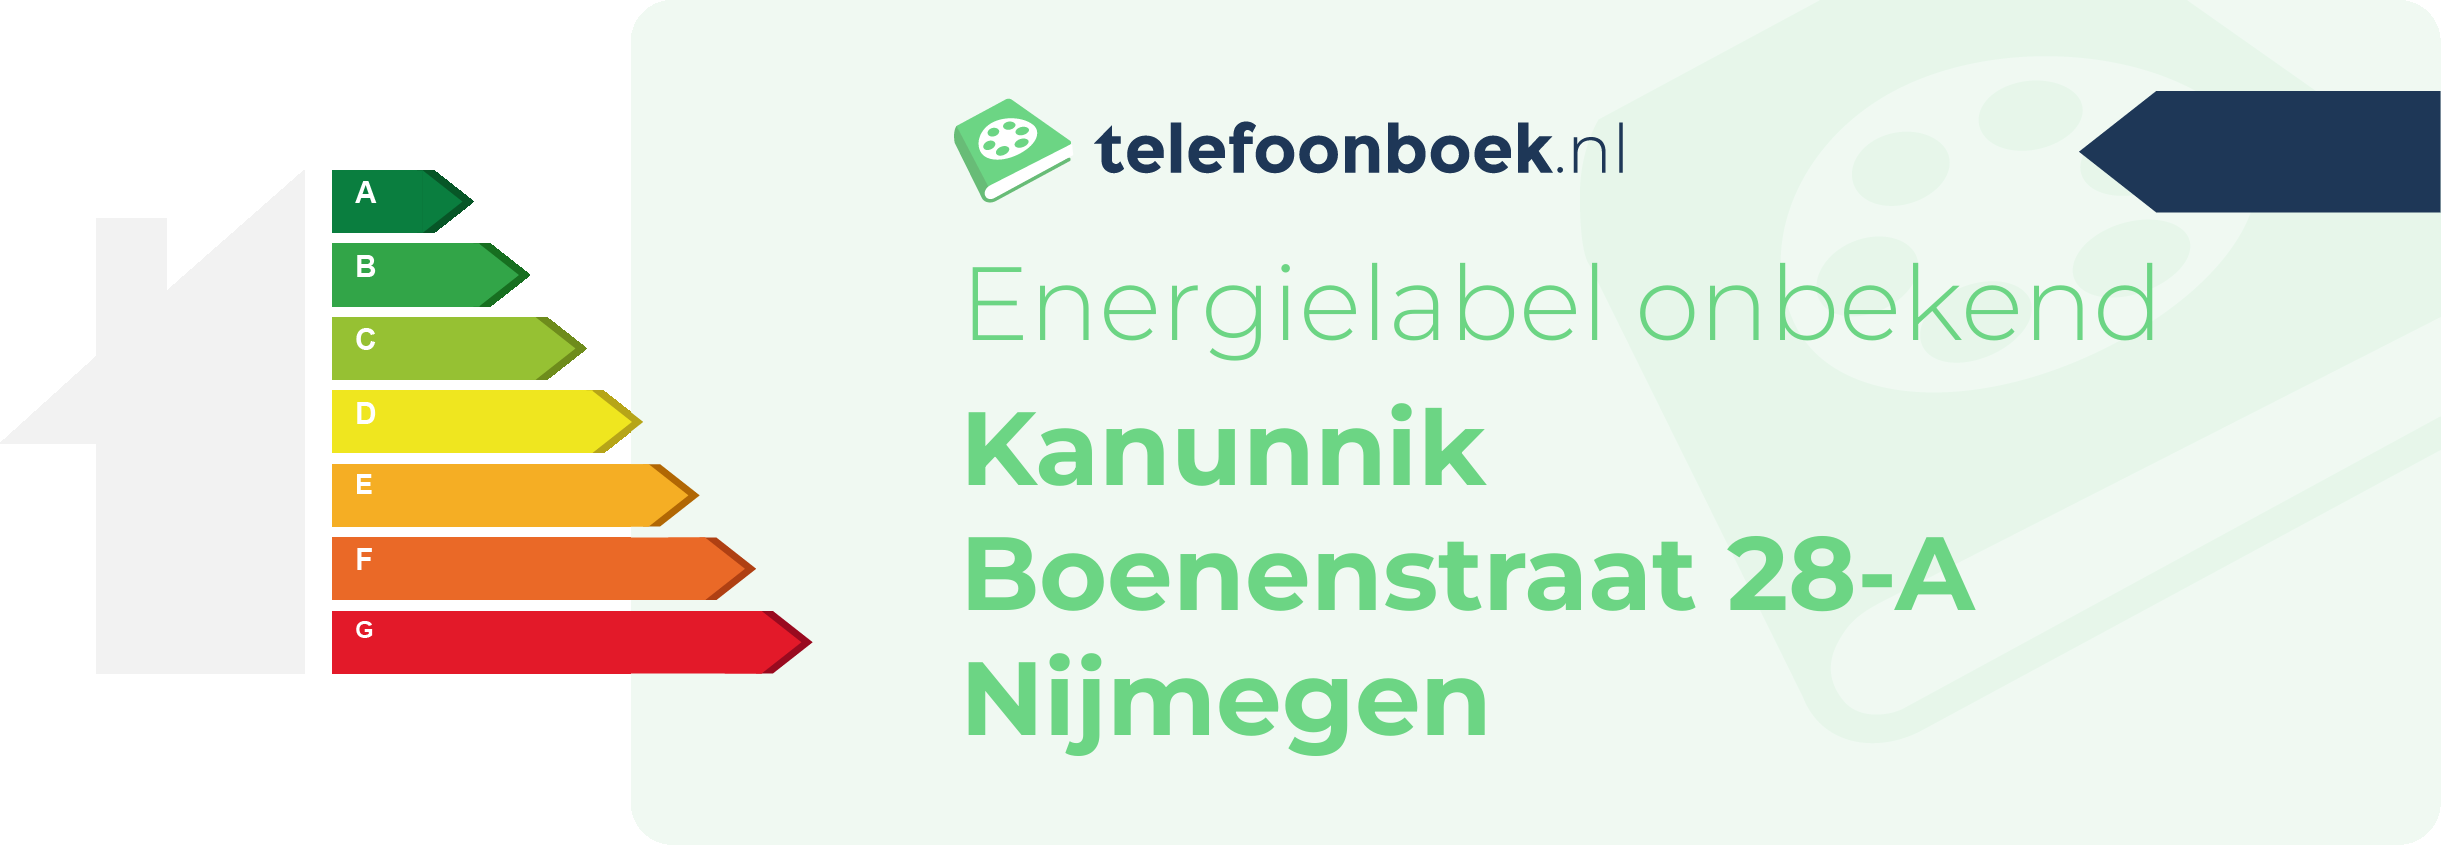 Energielabel Kanunnik Boenenstraat 28-A Nijmegen